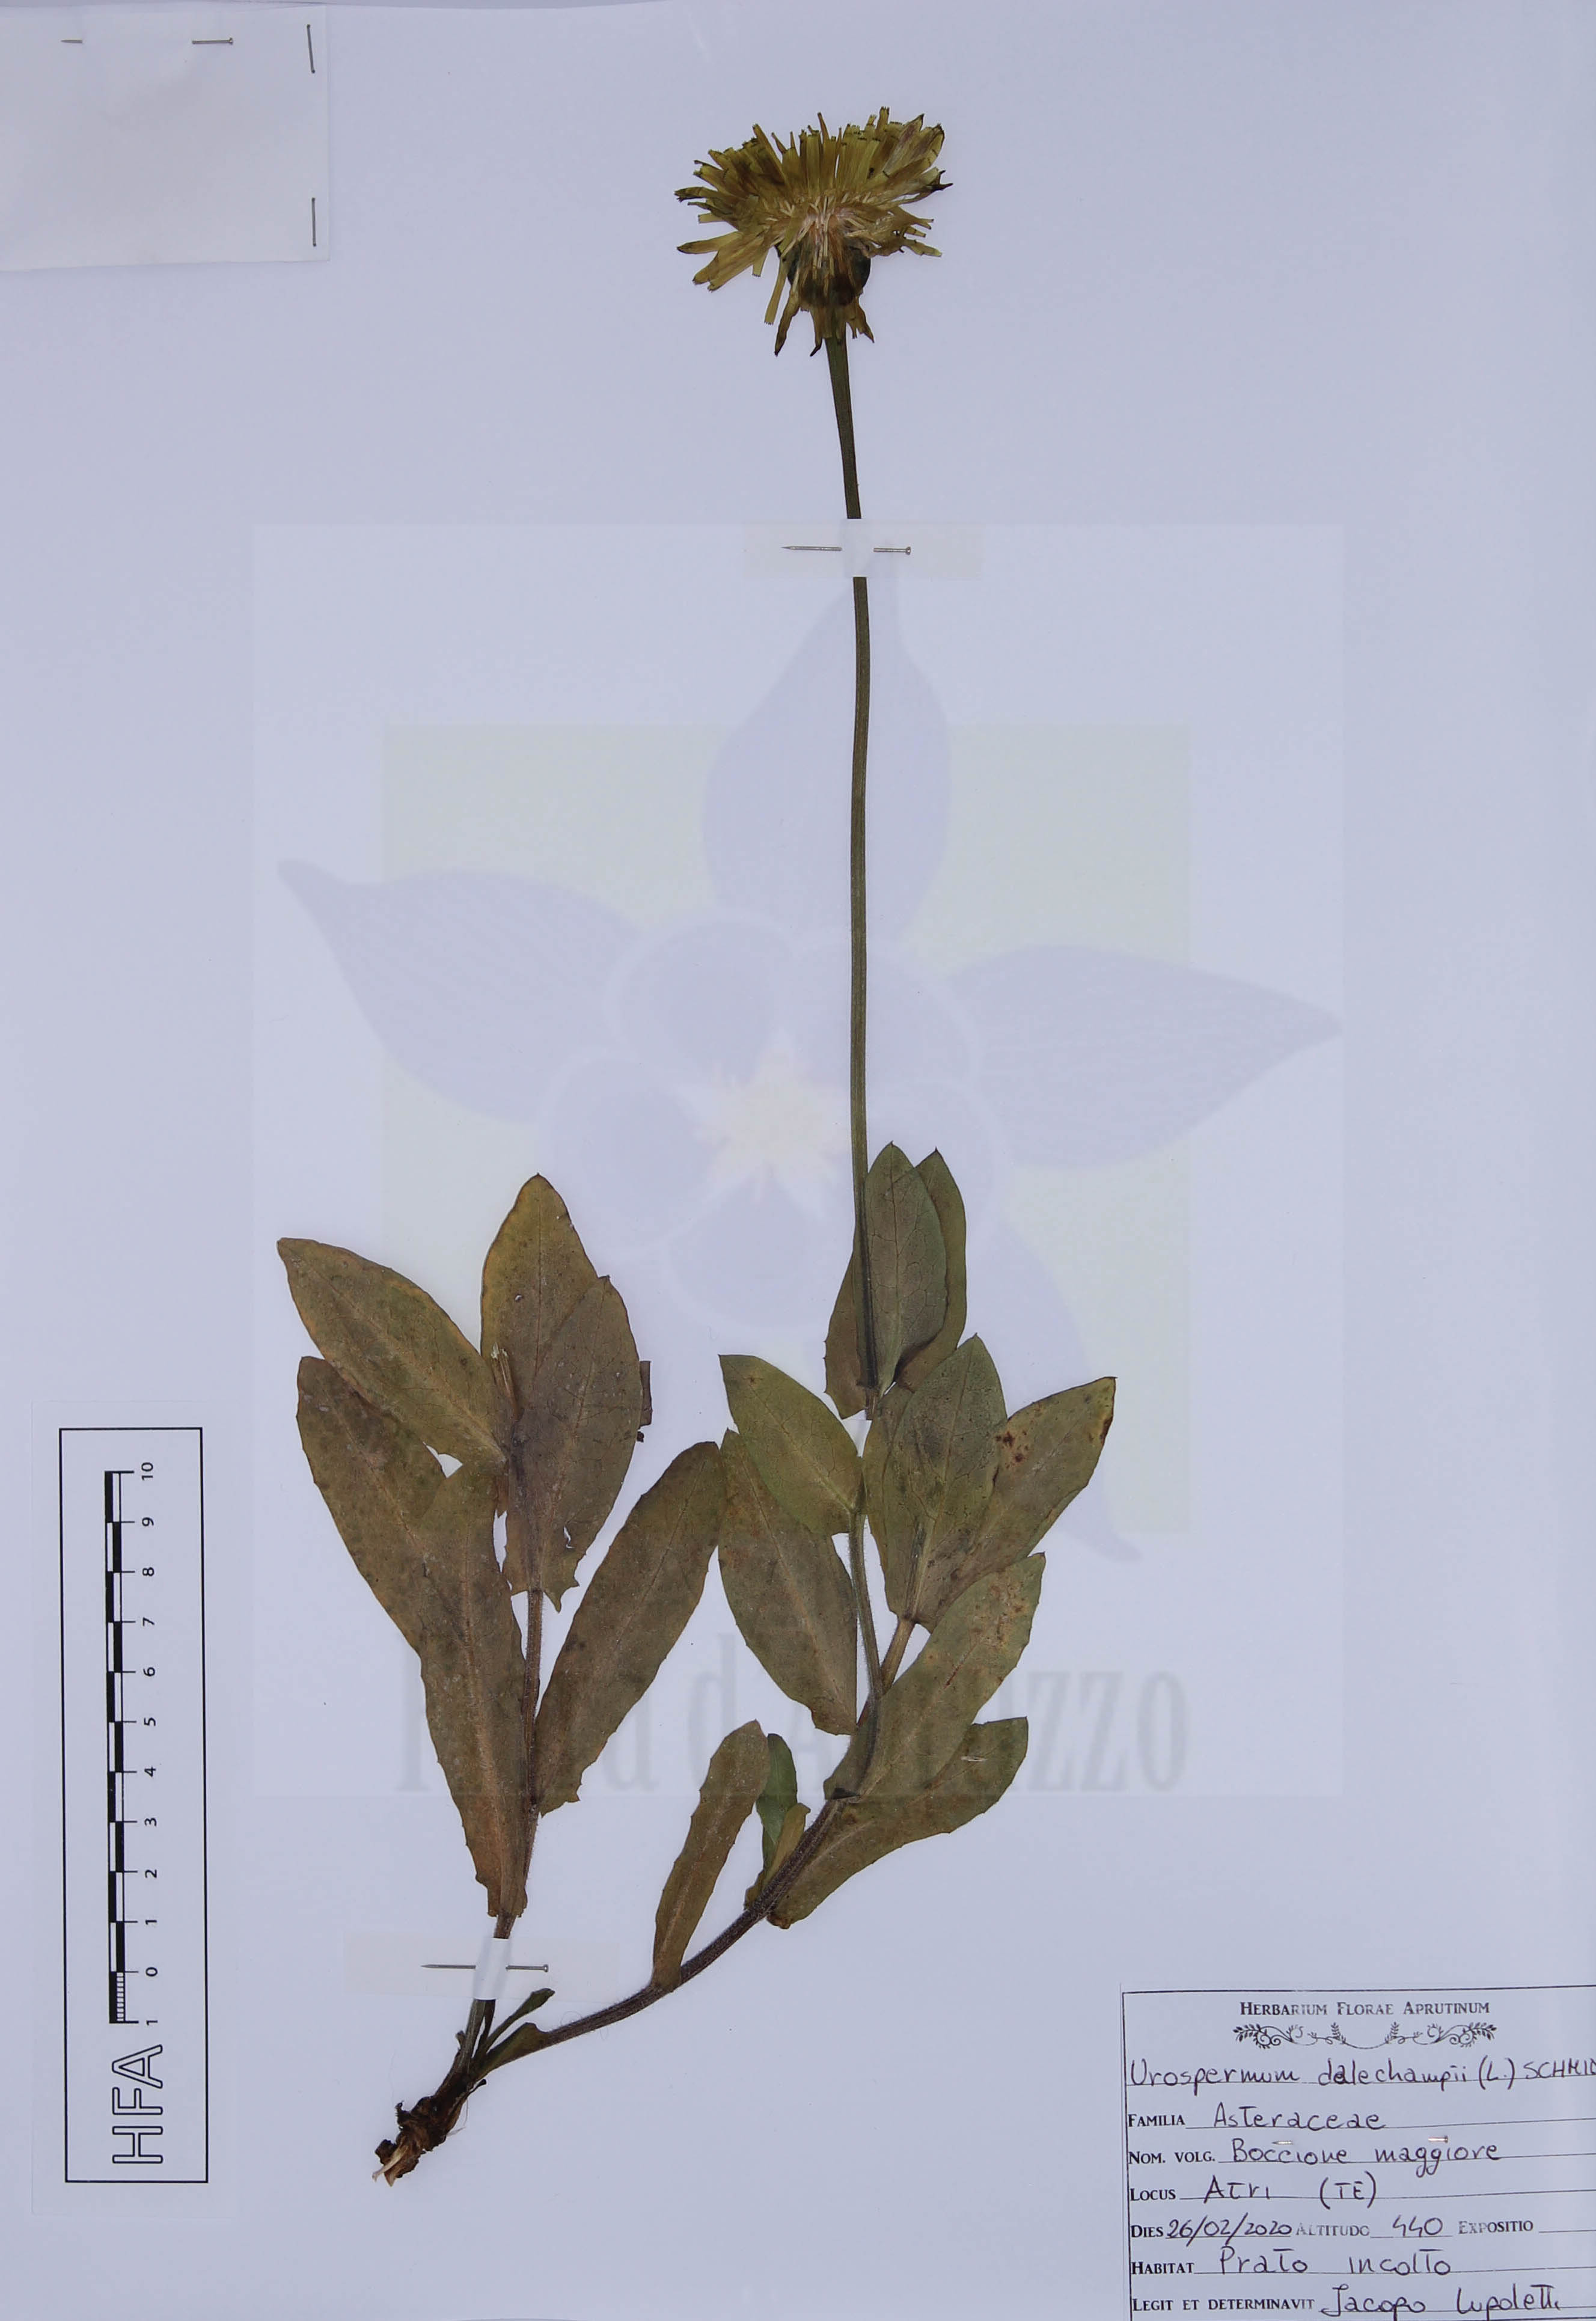 Urospermum dalechampii (L.) F.W. Schmidt